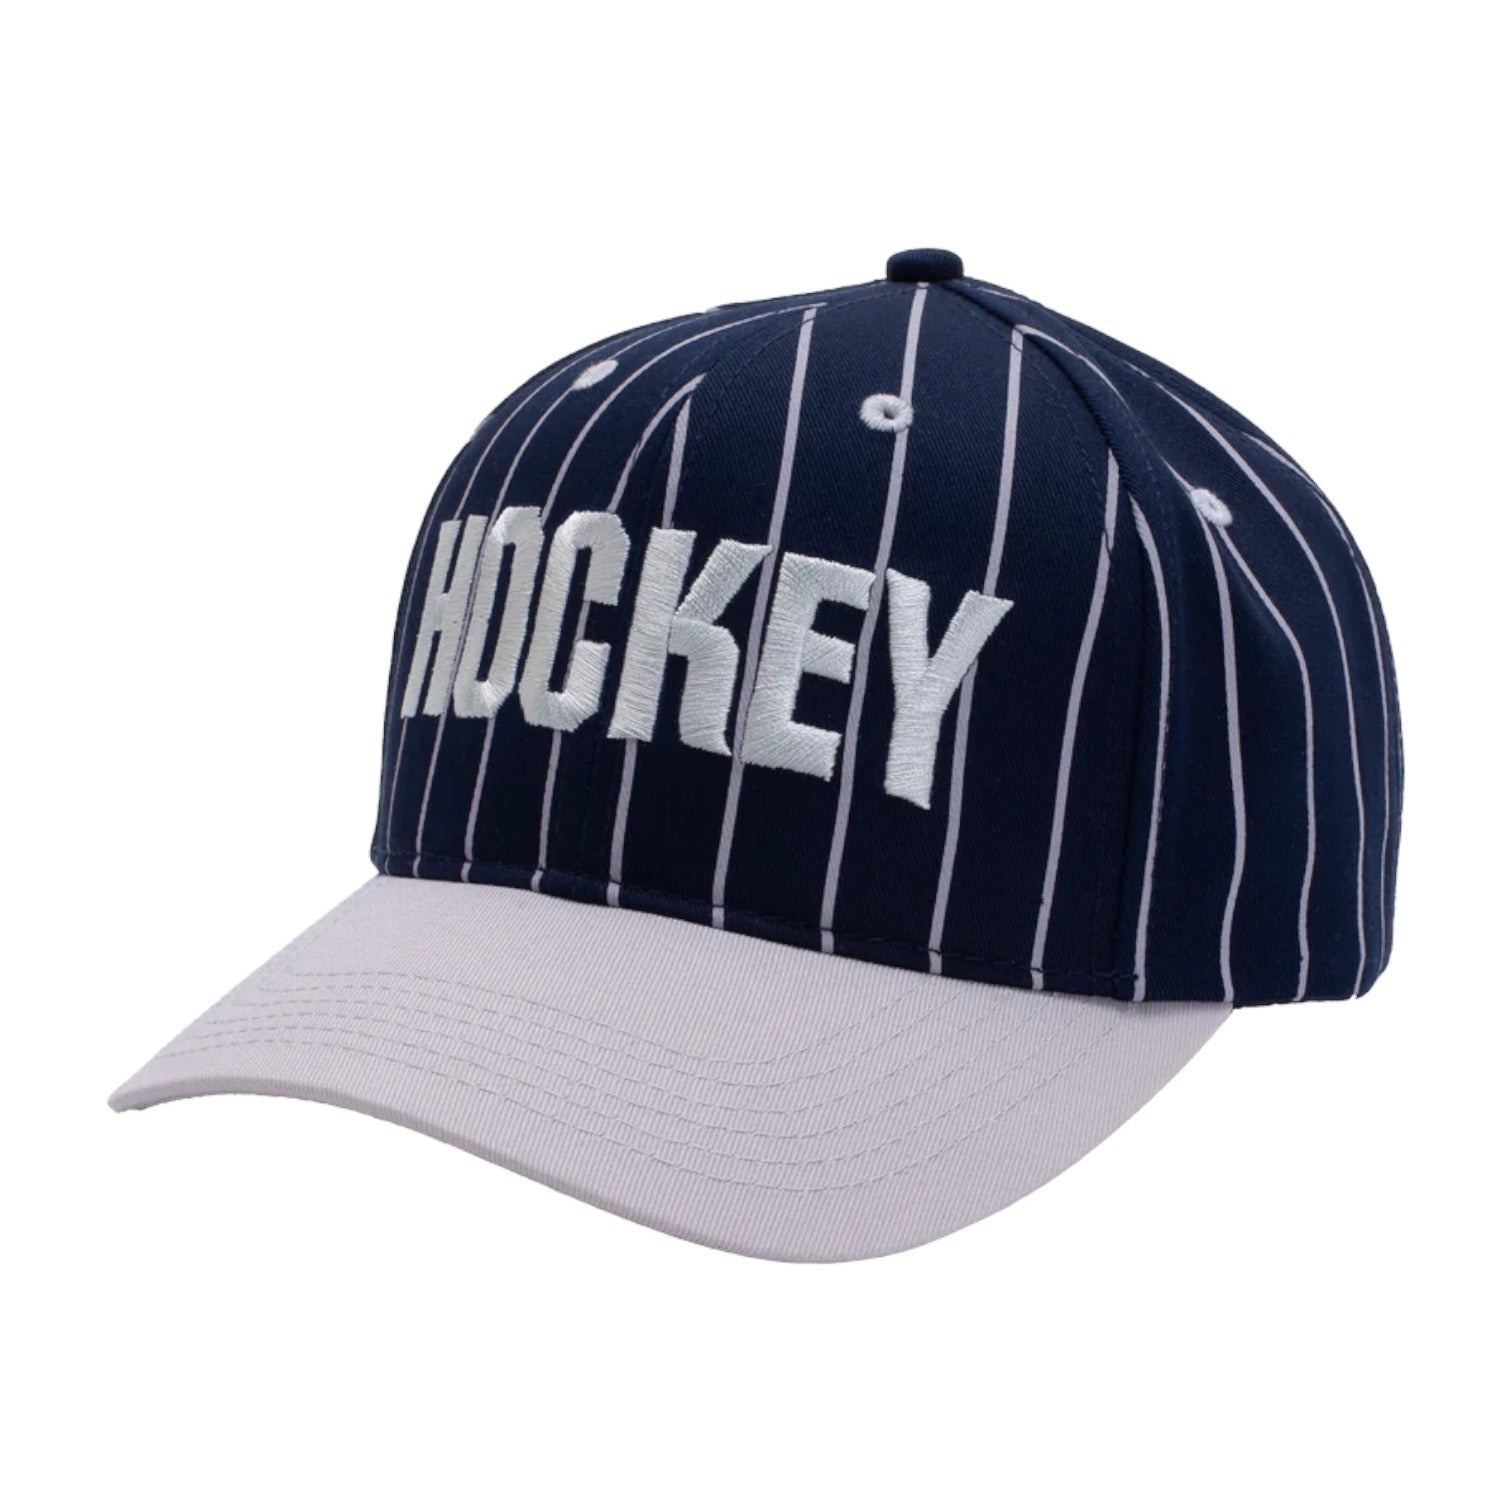 Hockey Pinstripe Hat - Navy